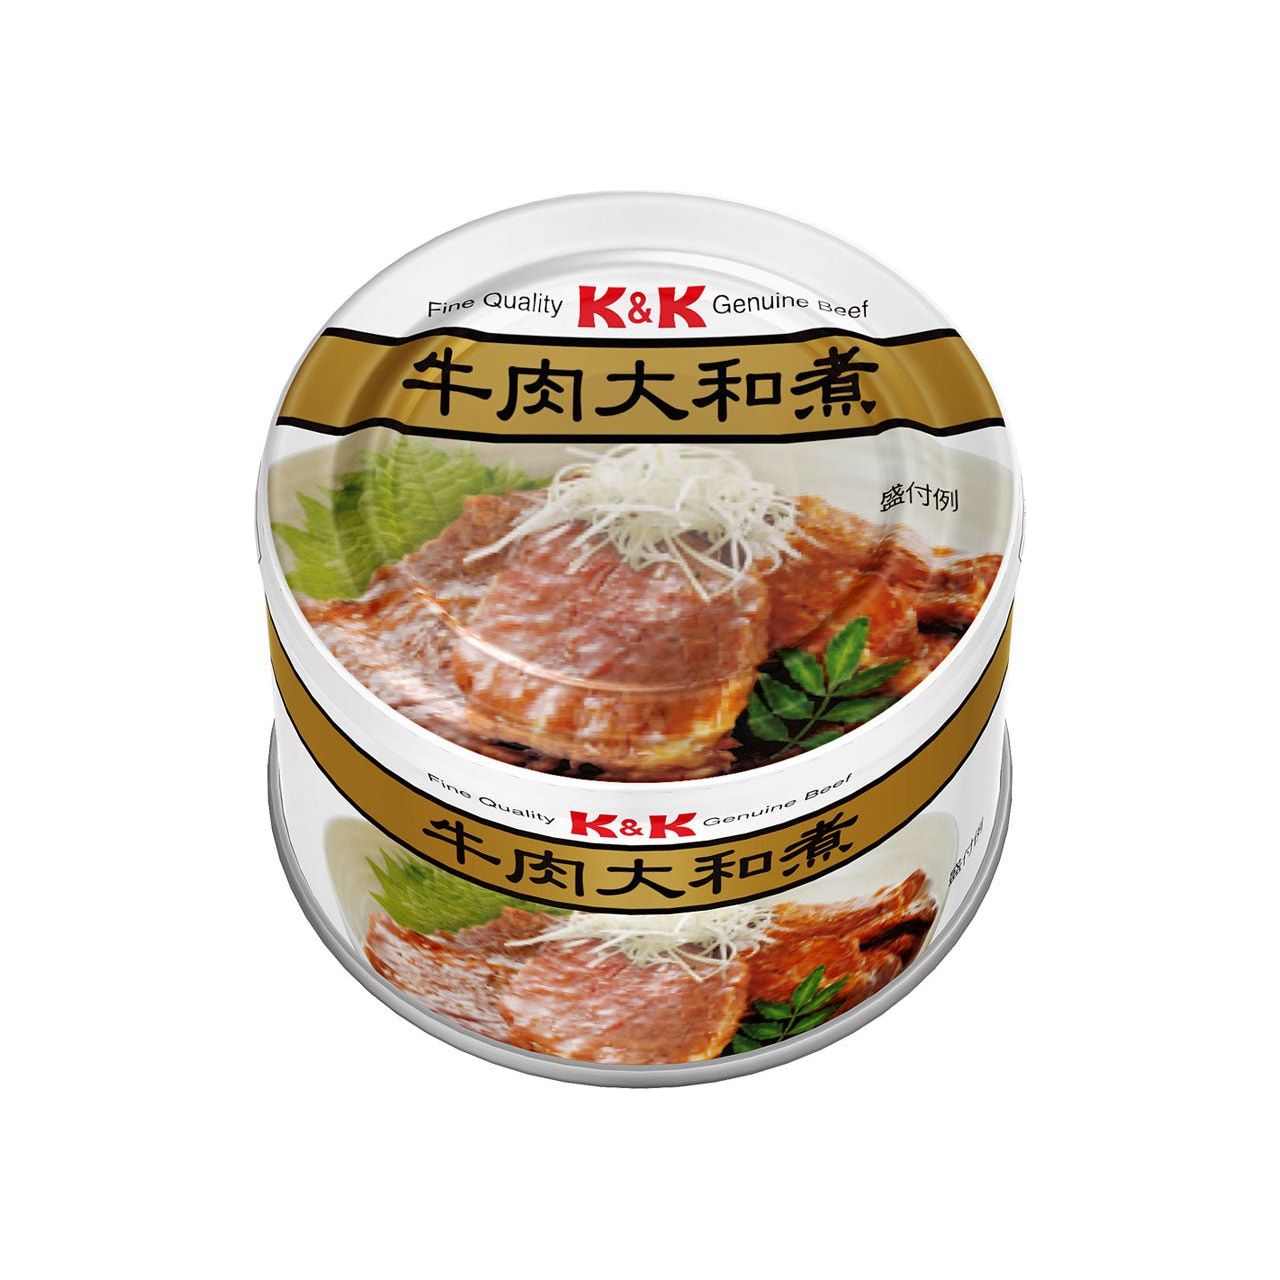 【在庫のこりわずか】K&K 牛肉大和煮